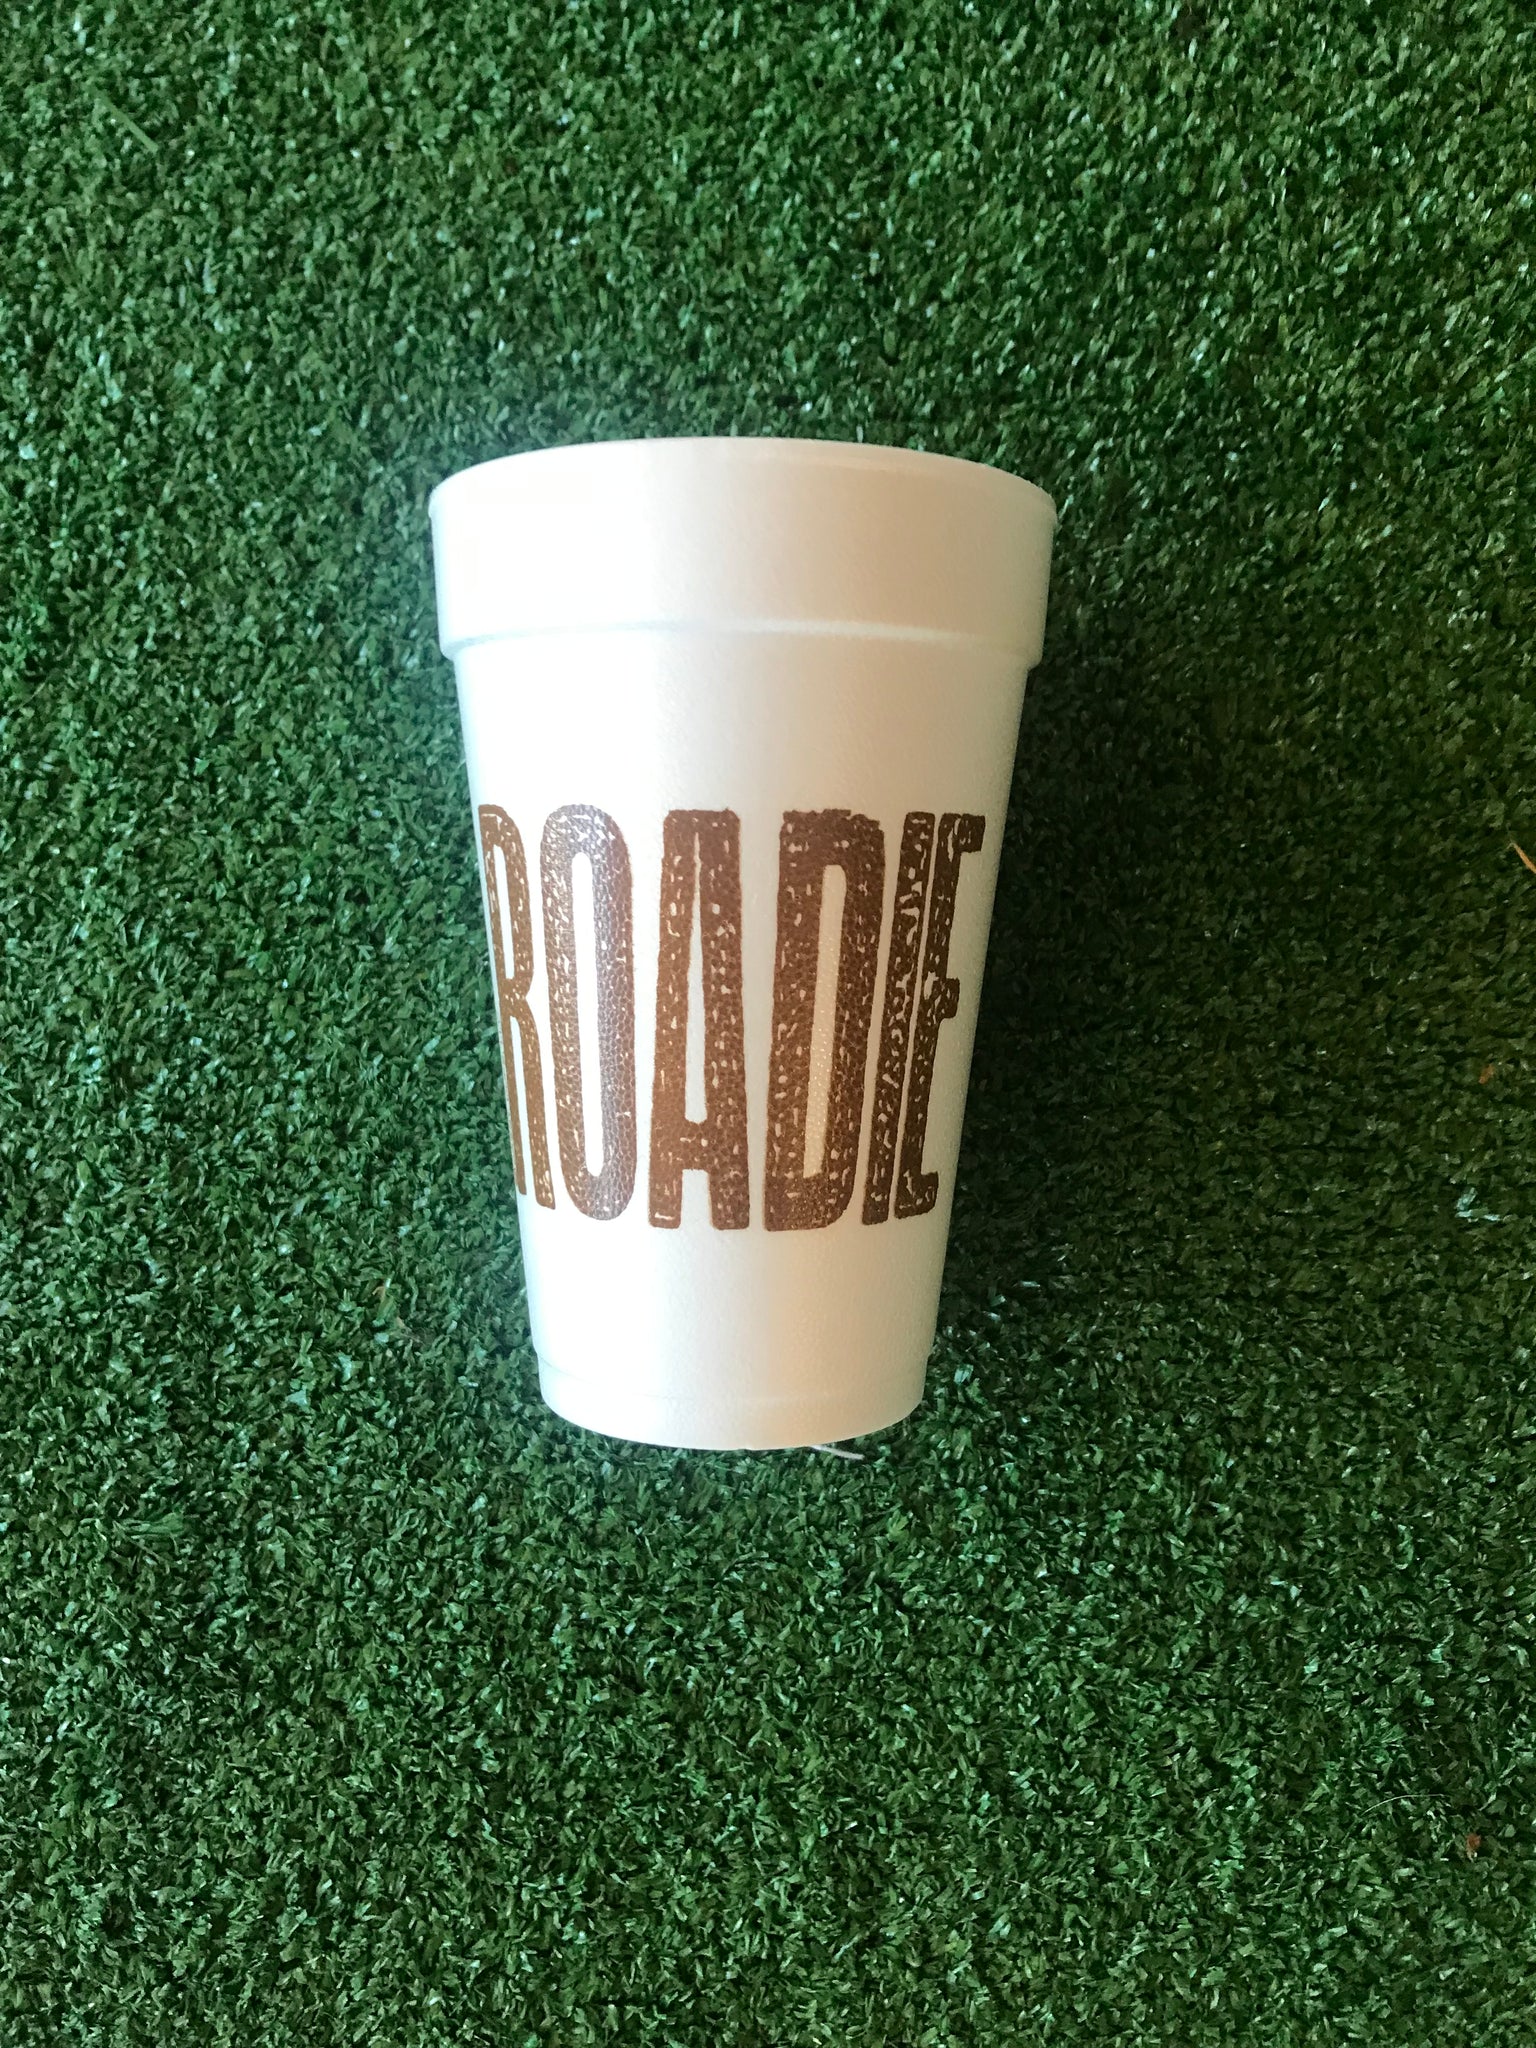 Styrofoam Cups - Roadie/Spit Cup